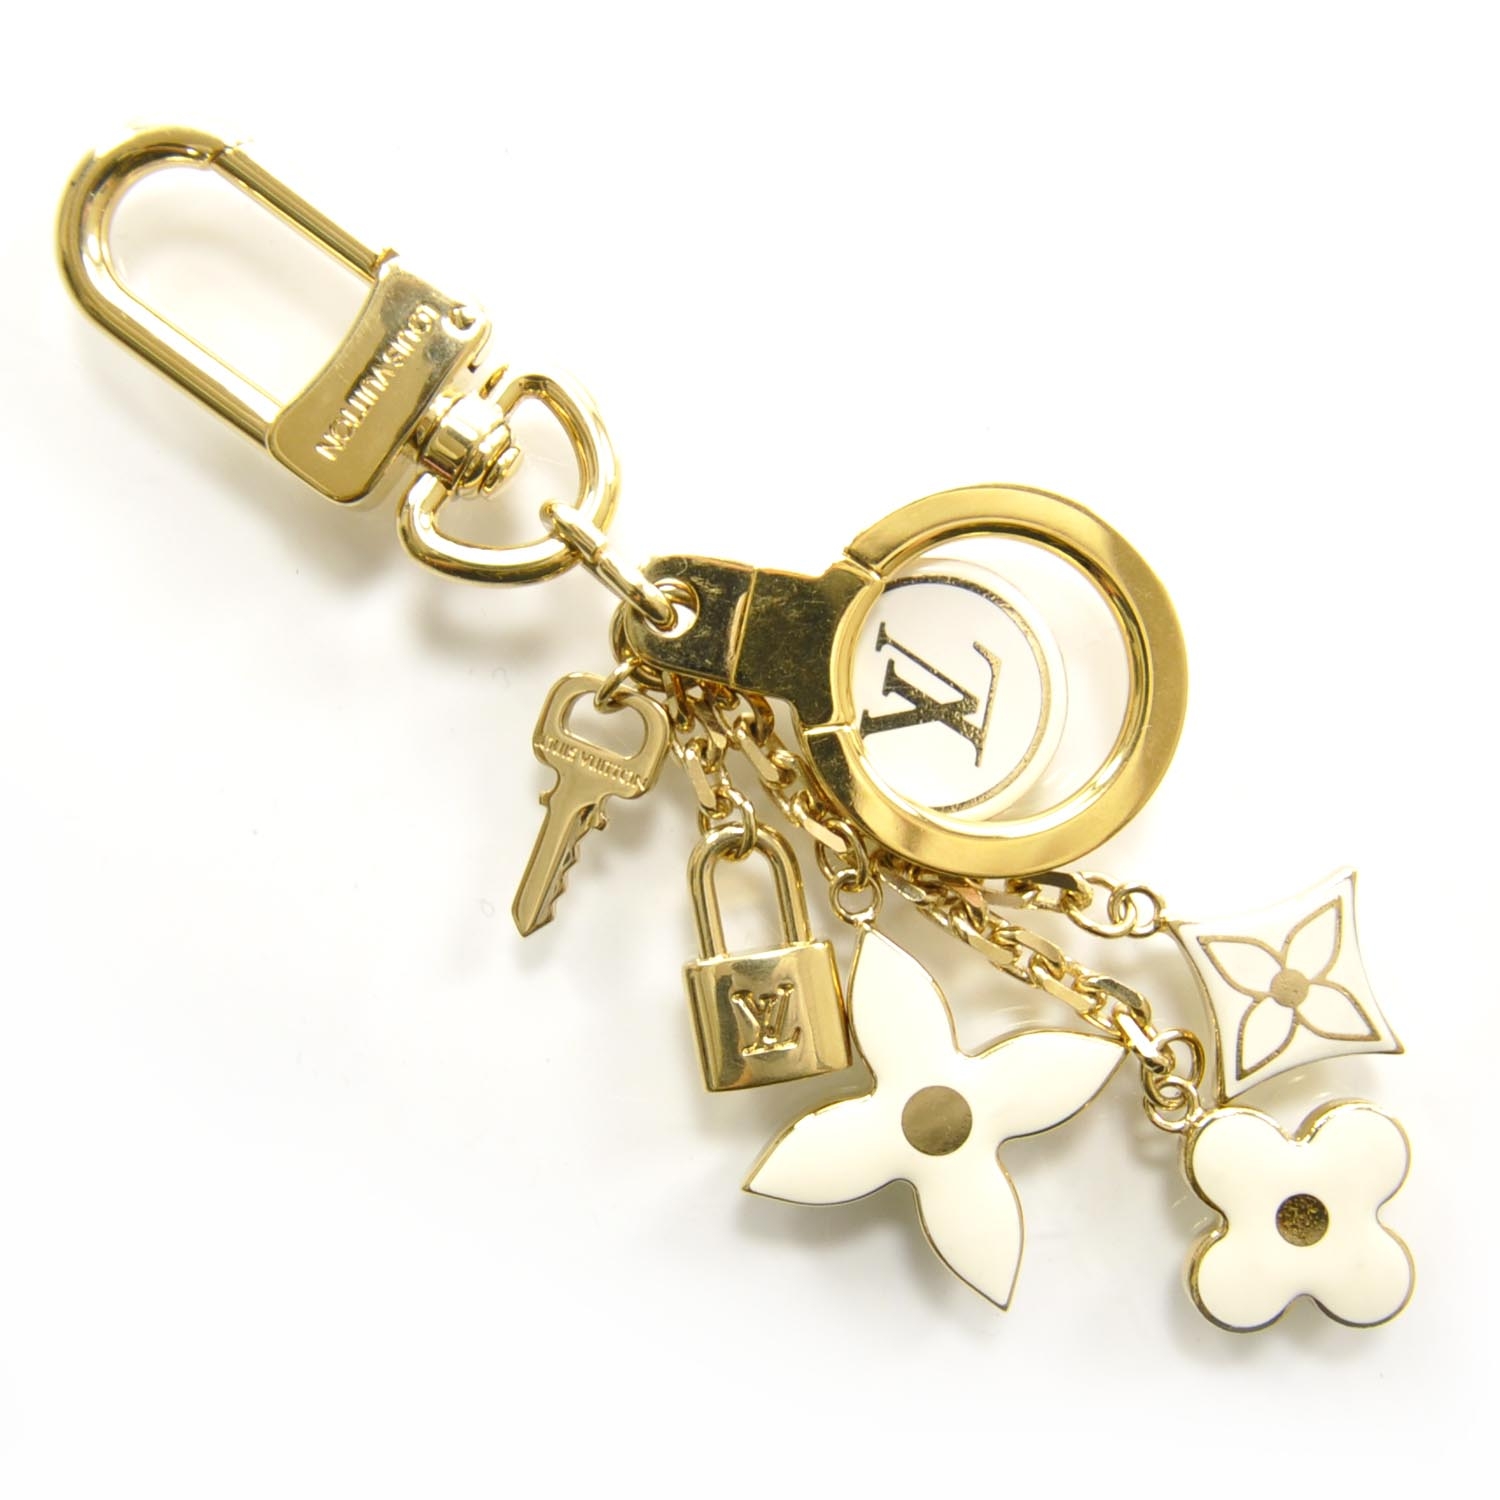 LOUIS VUITTON Pastilles Cles Key Chain Bag Charm 23423